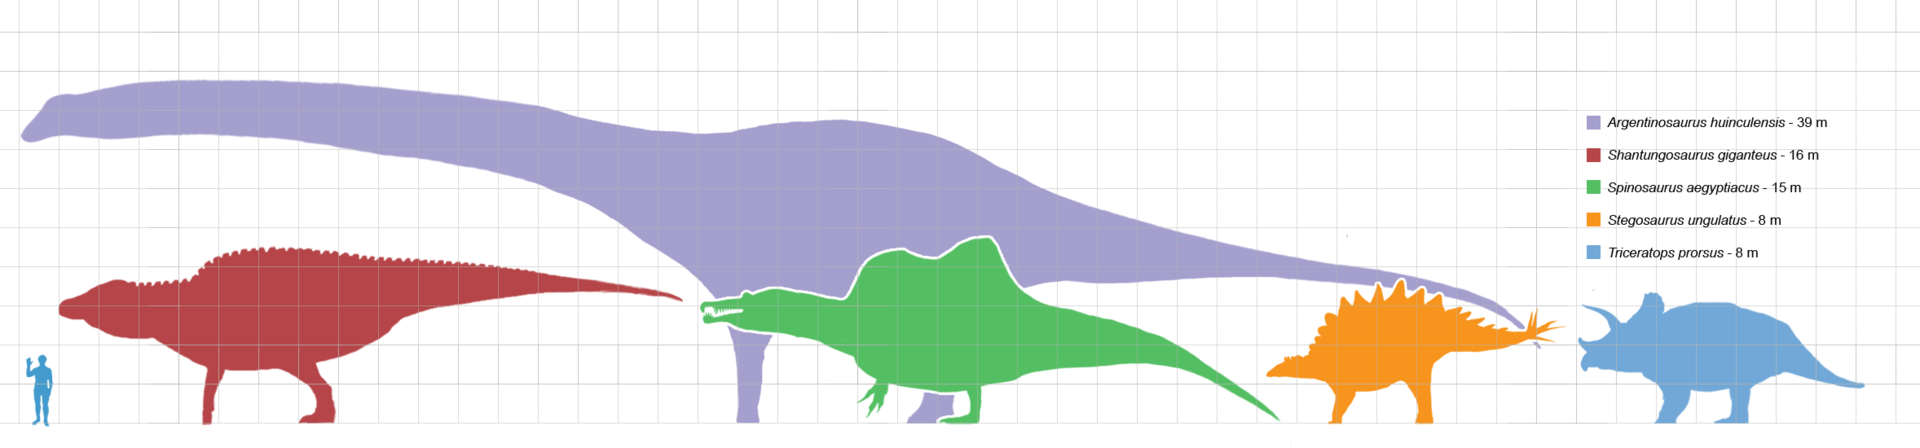 1920px-Largestdinosaursbysuborder_scale.png